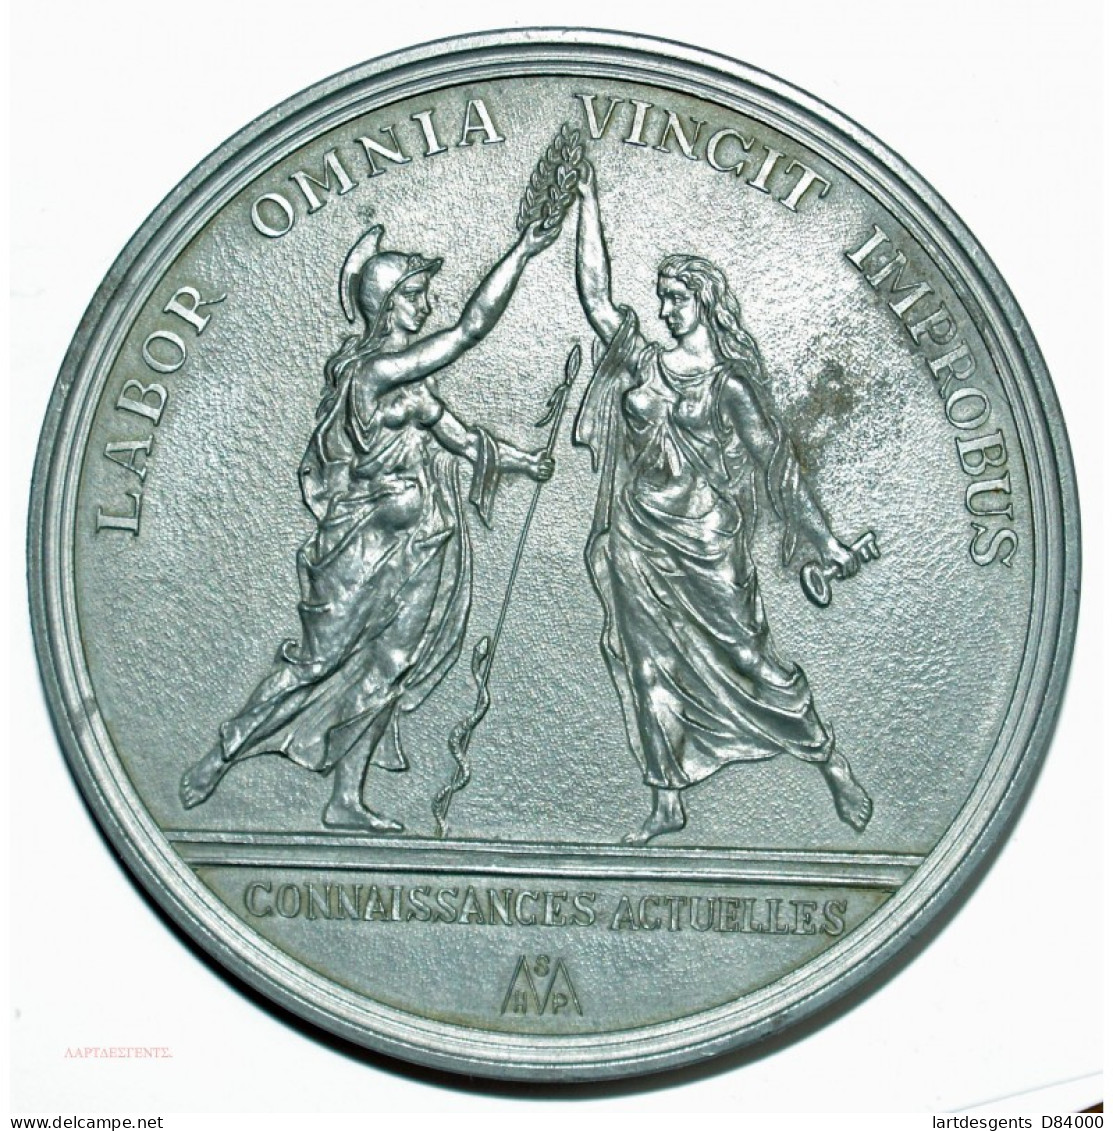 Médaille JEAN BATISTE COLBERT  1619-1683 Par M.BERTONNIER - Royal / Of Nobility